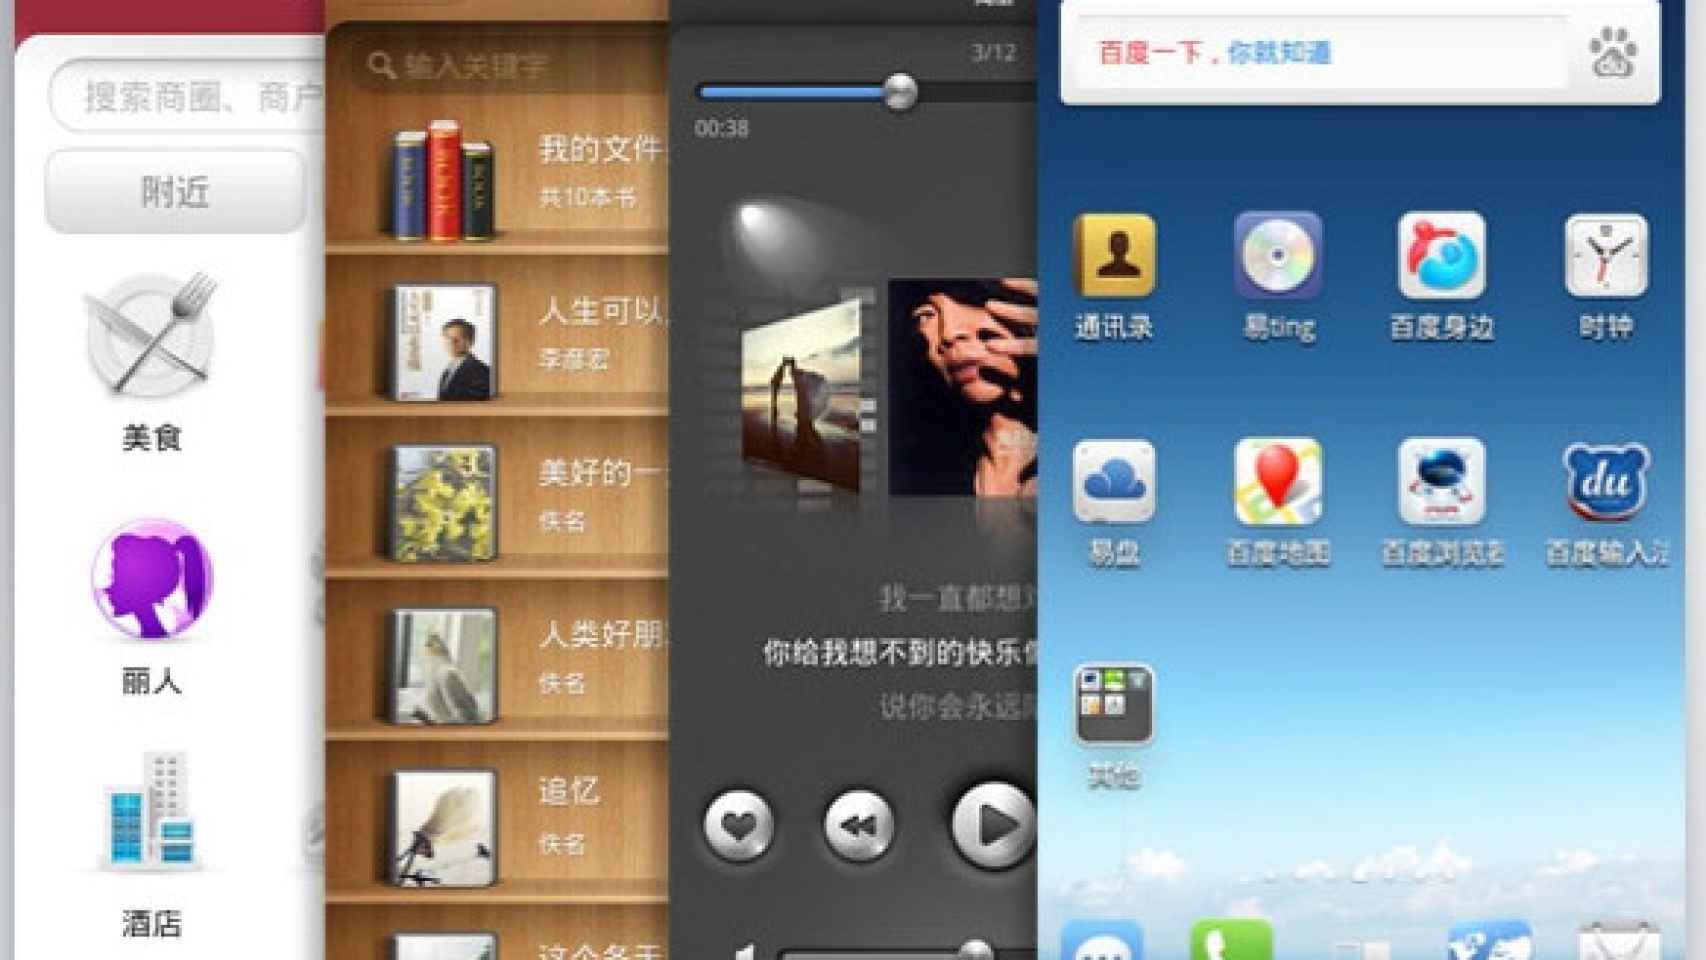 La copia China de Android: Baidu YI y su presentación oficial